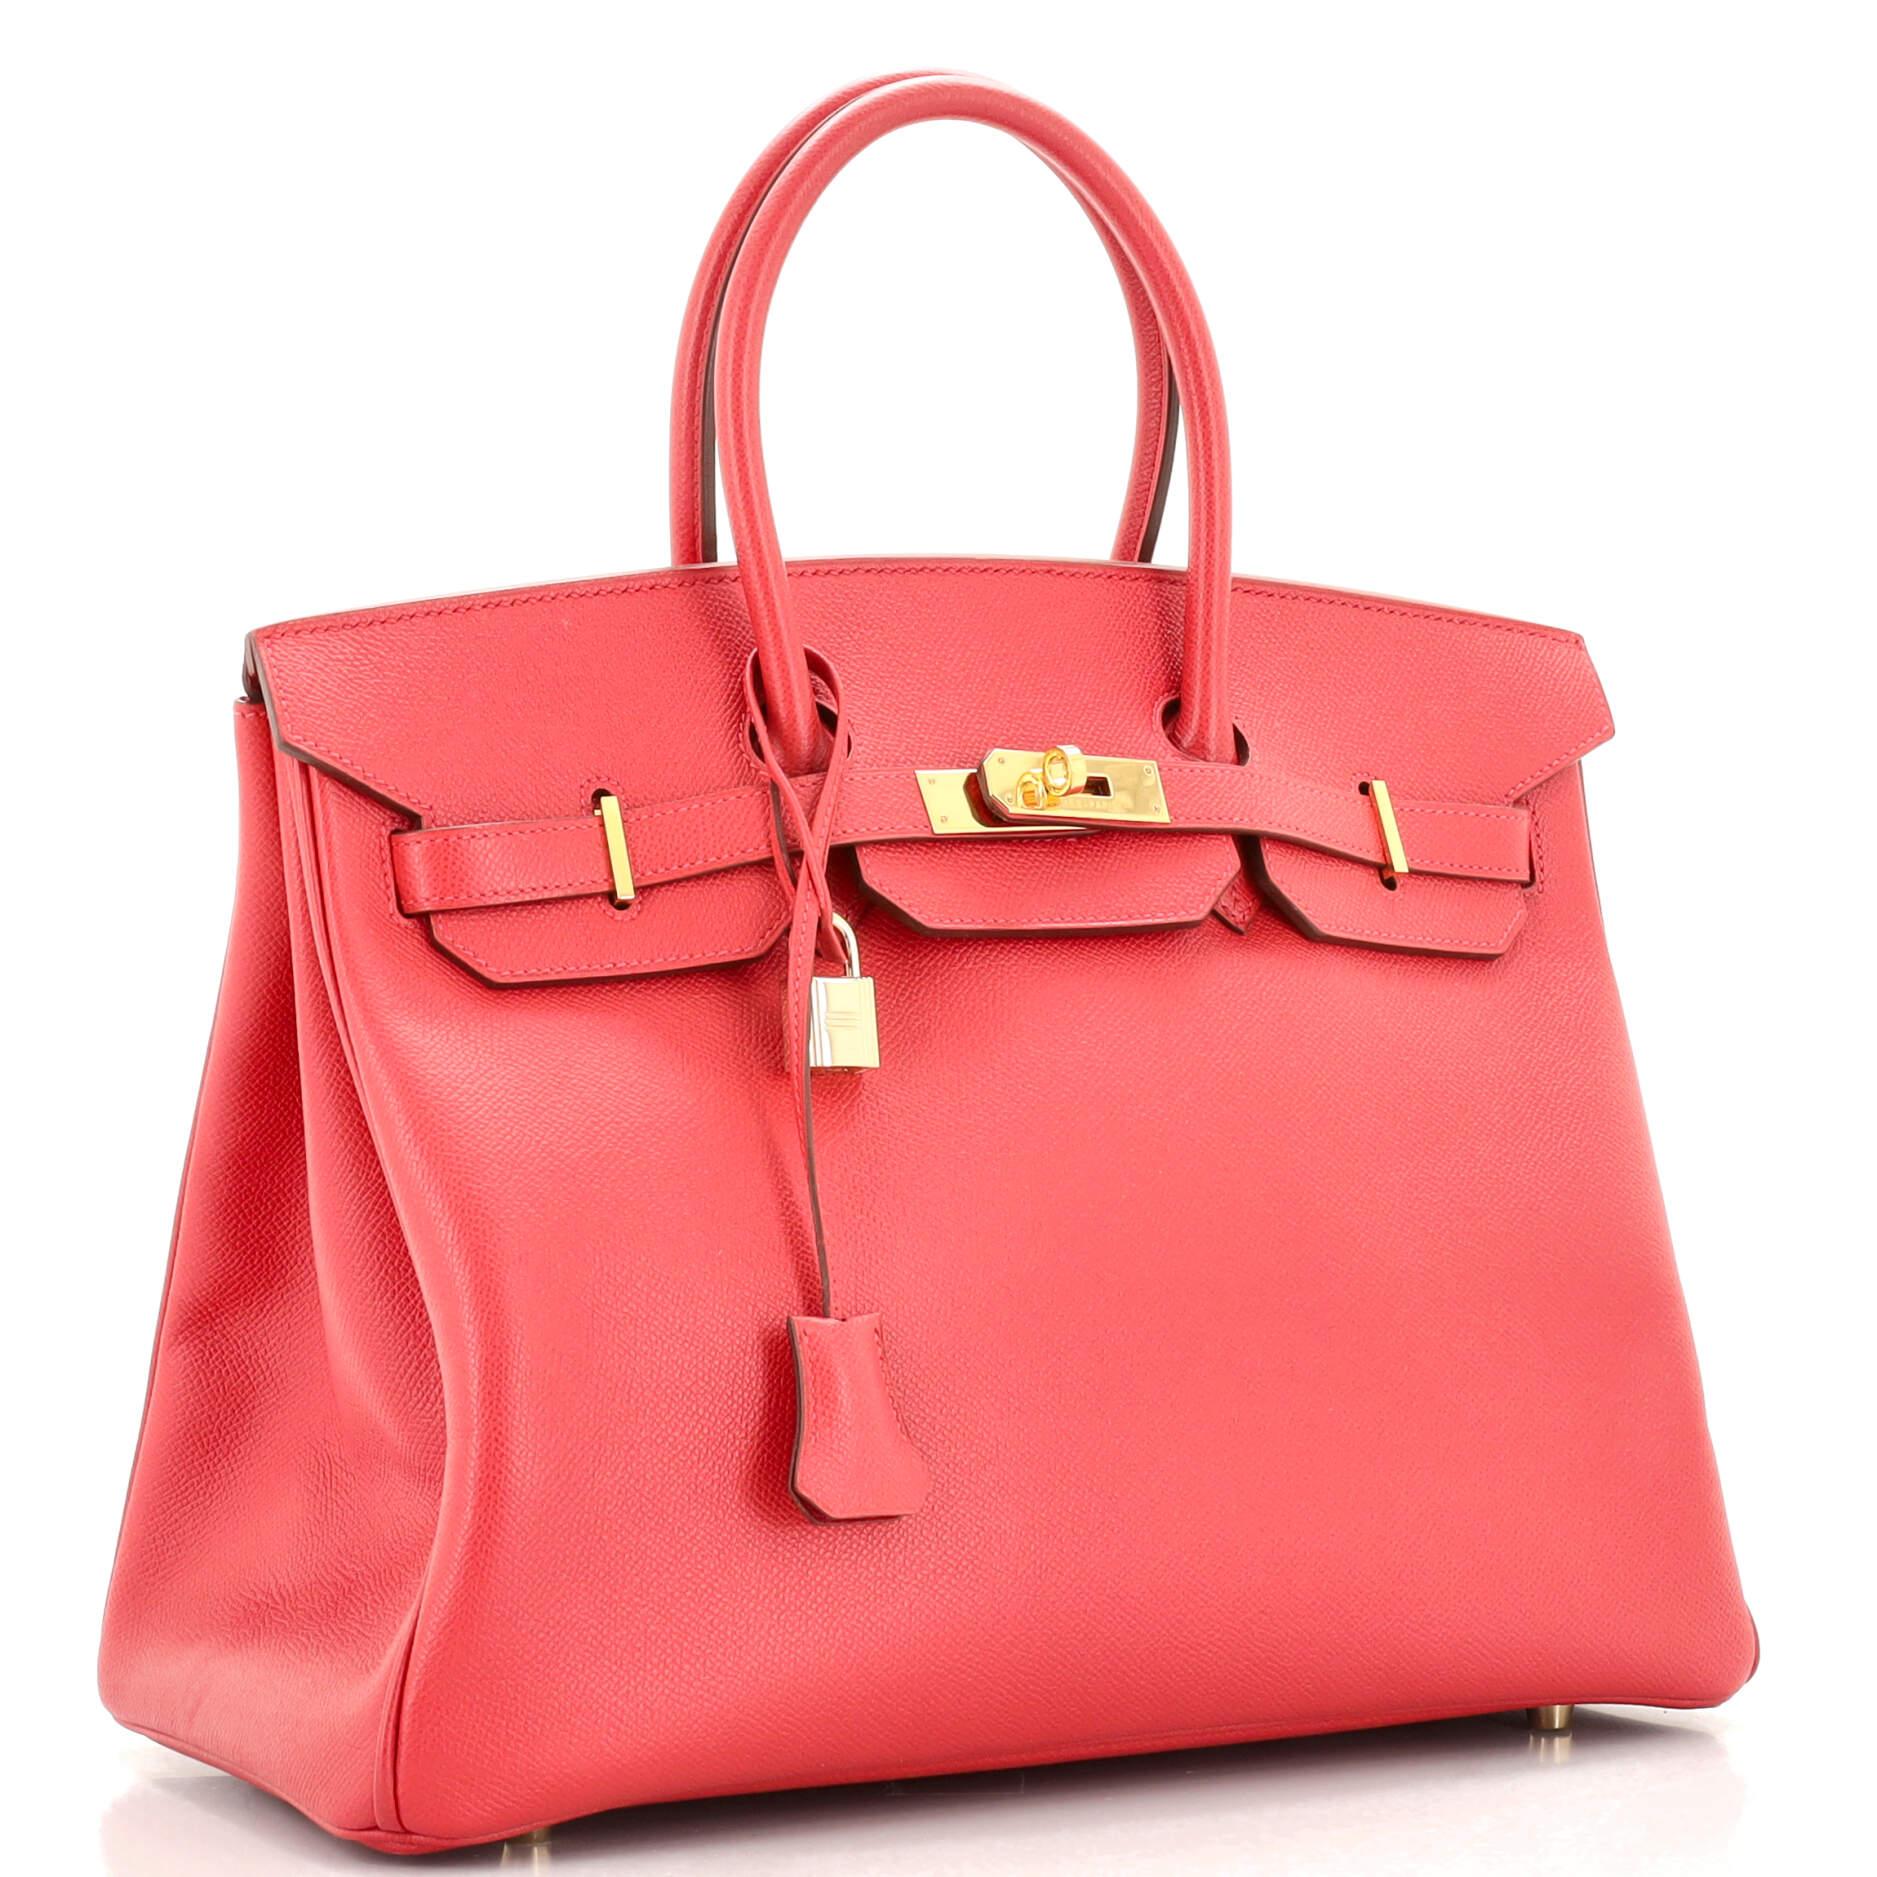 Pink Hermes Birkin Handbag Rouge Vif Epsom with Gold Hardware 35